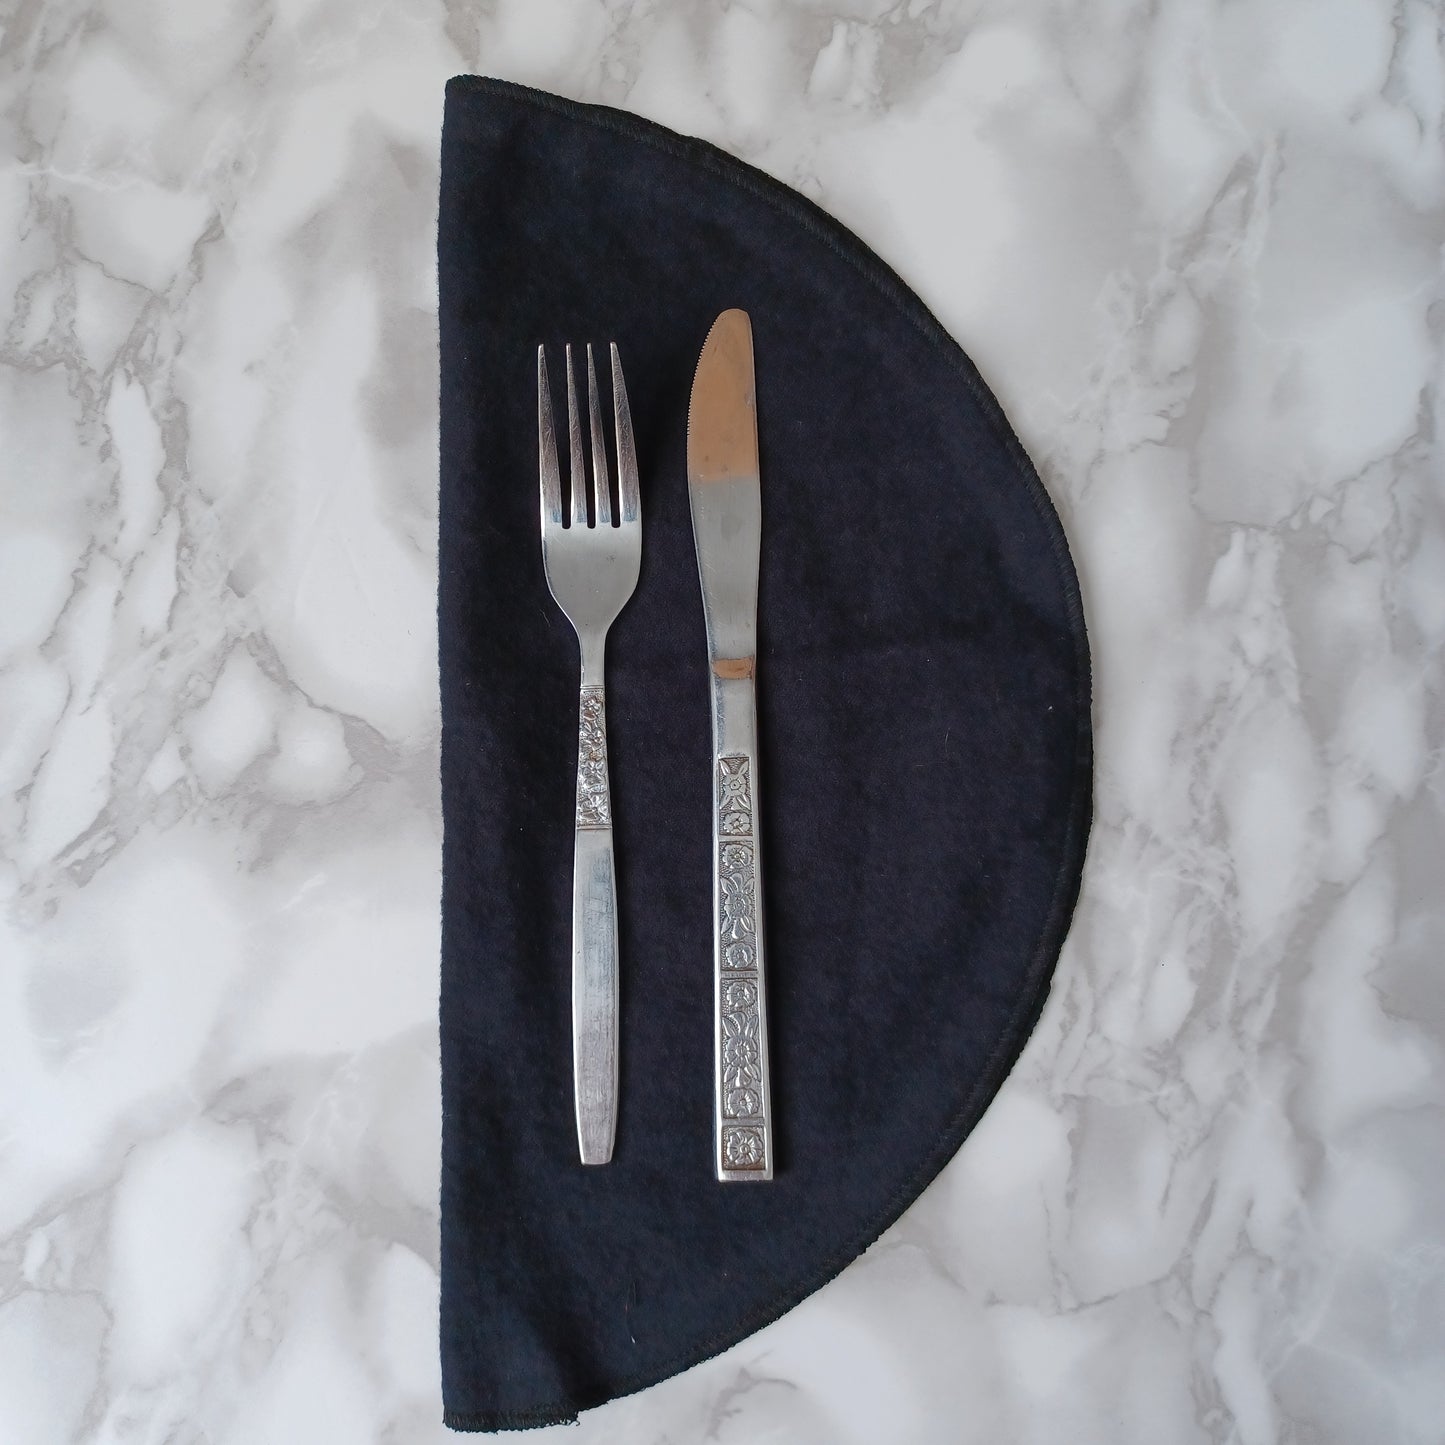 Serviettes de table et Essuie-tout-NOIR/Napkins and Paperless towels BLACK